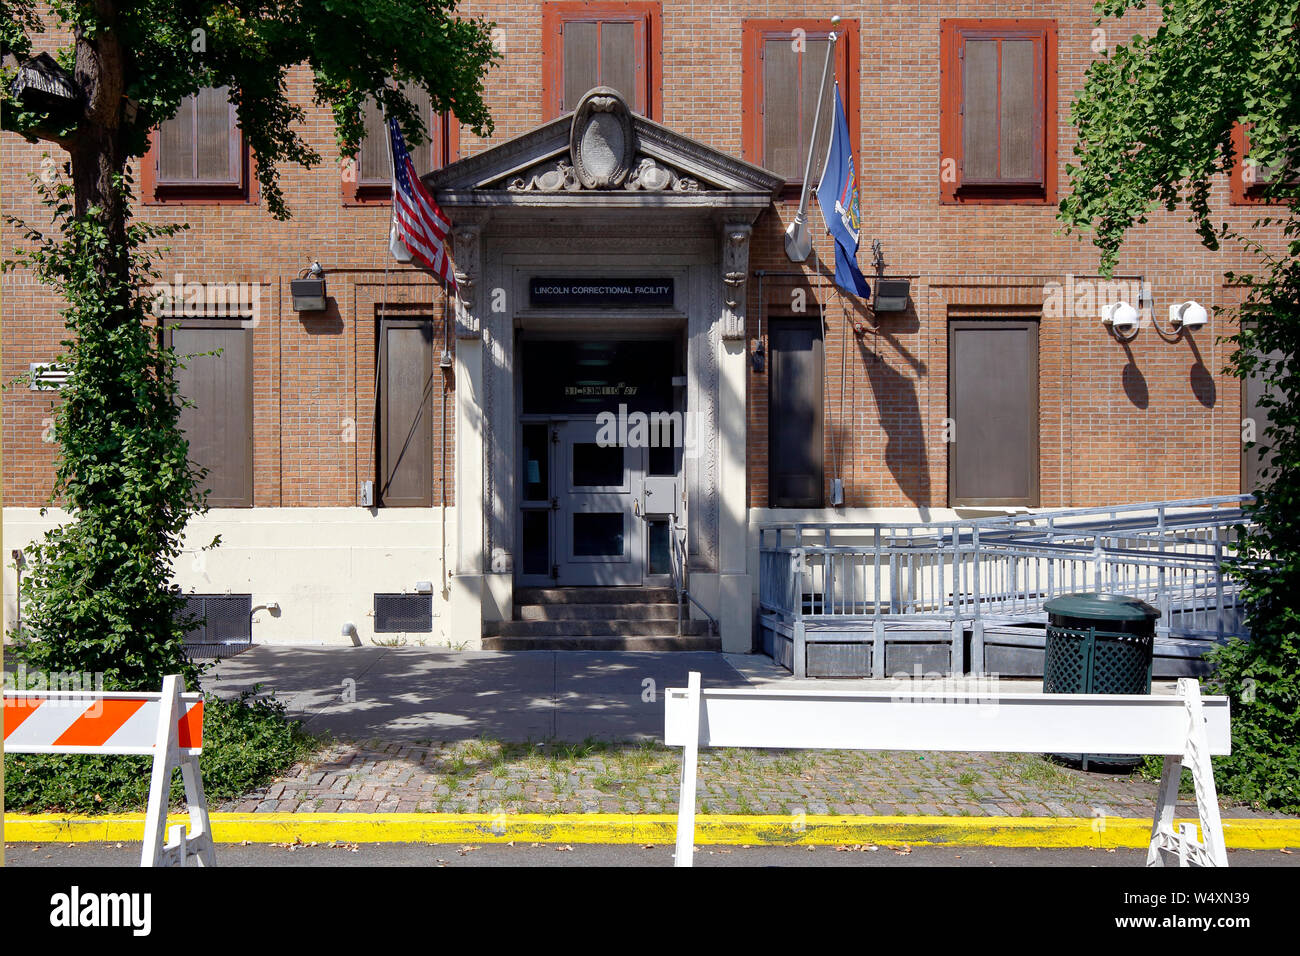 Lincoln Correctional Facility, 31-33 West 110th St, New York, NY devanture extérieure d'une prison pour mineurs dans le quartier de Harlem à Manhattan. Banque D'Images